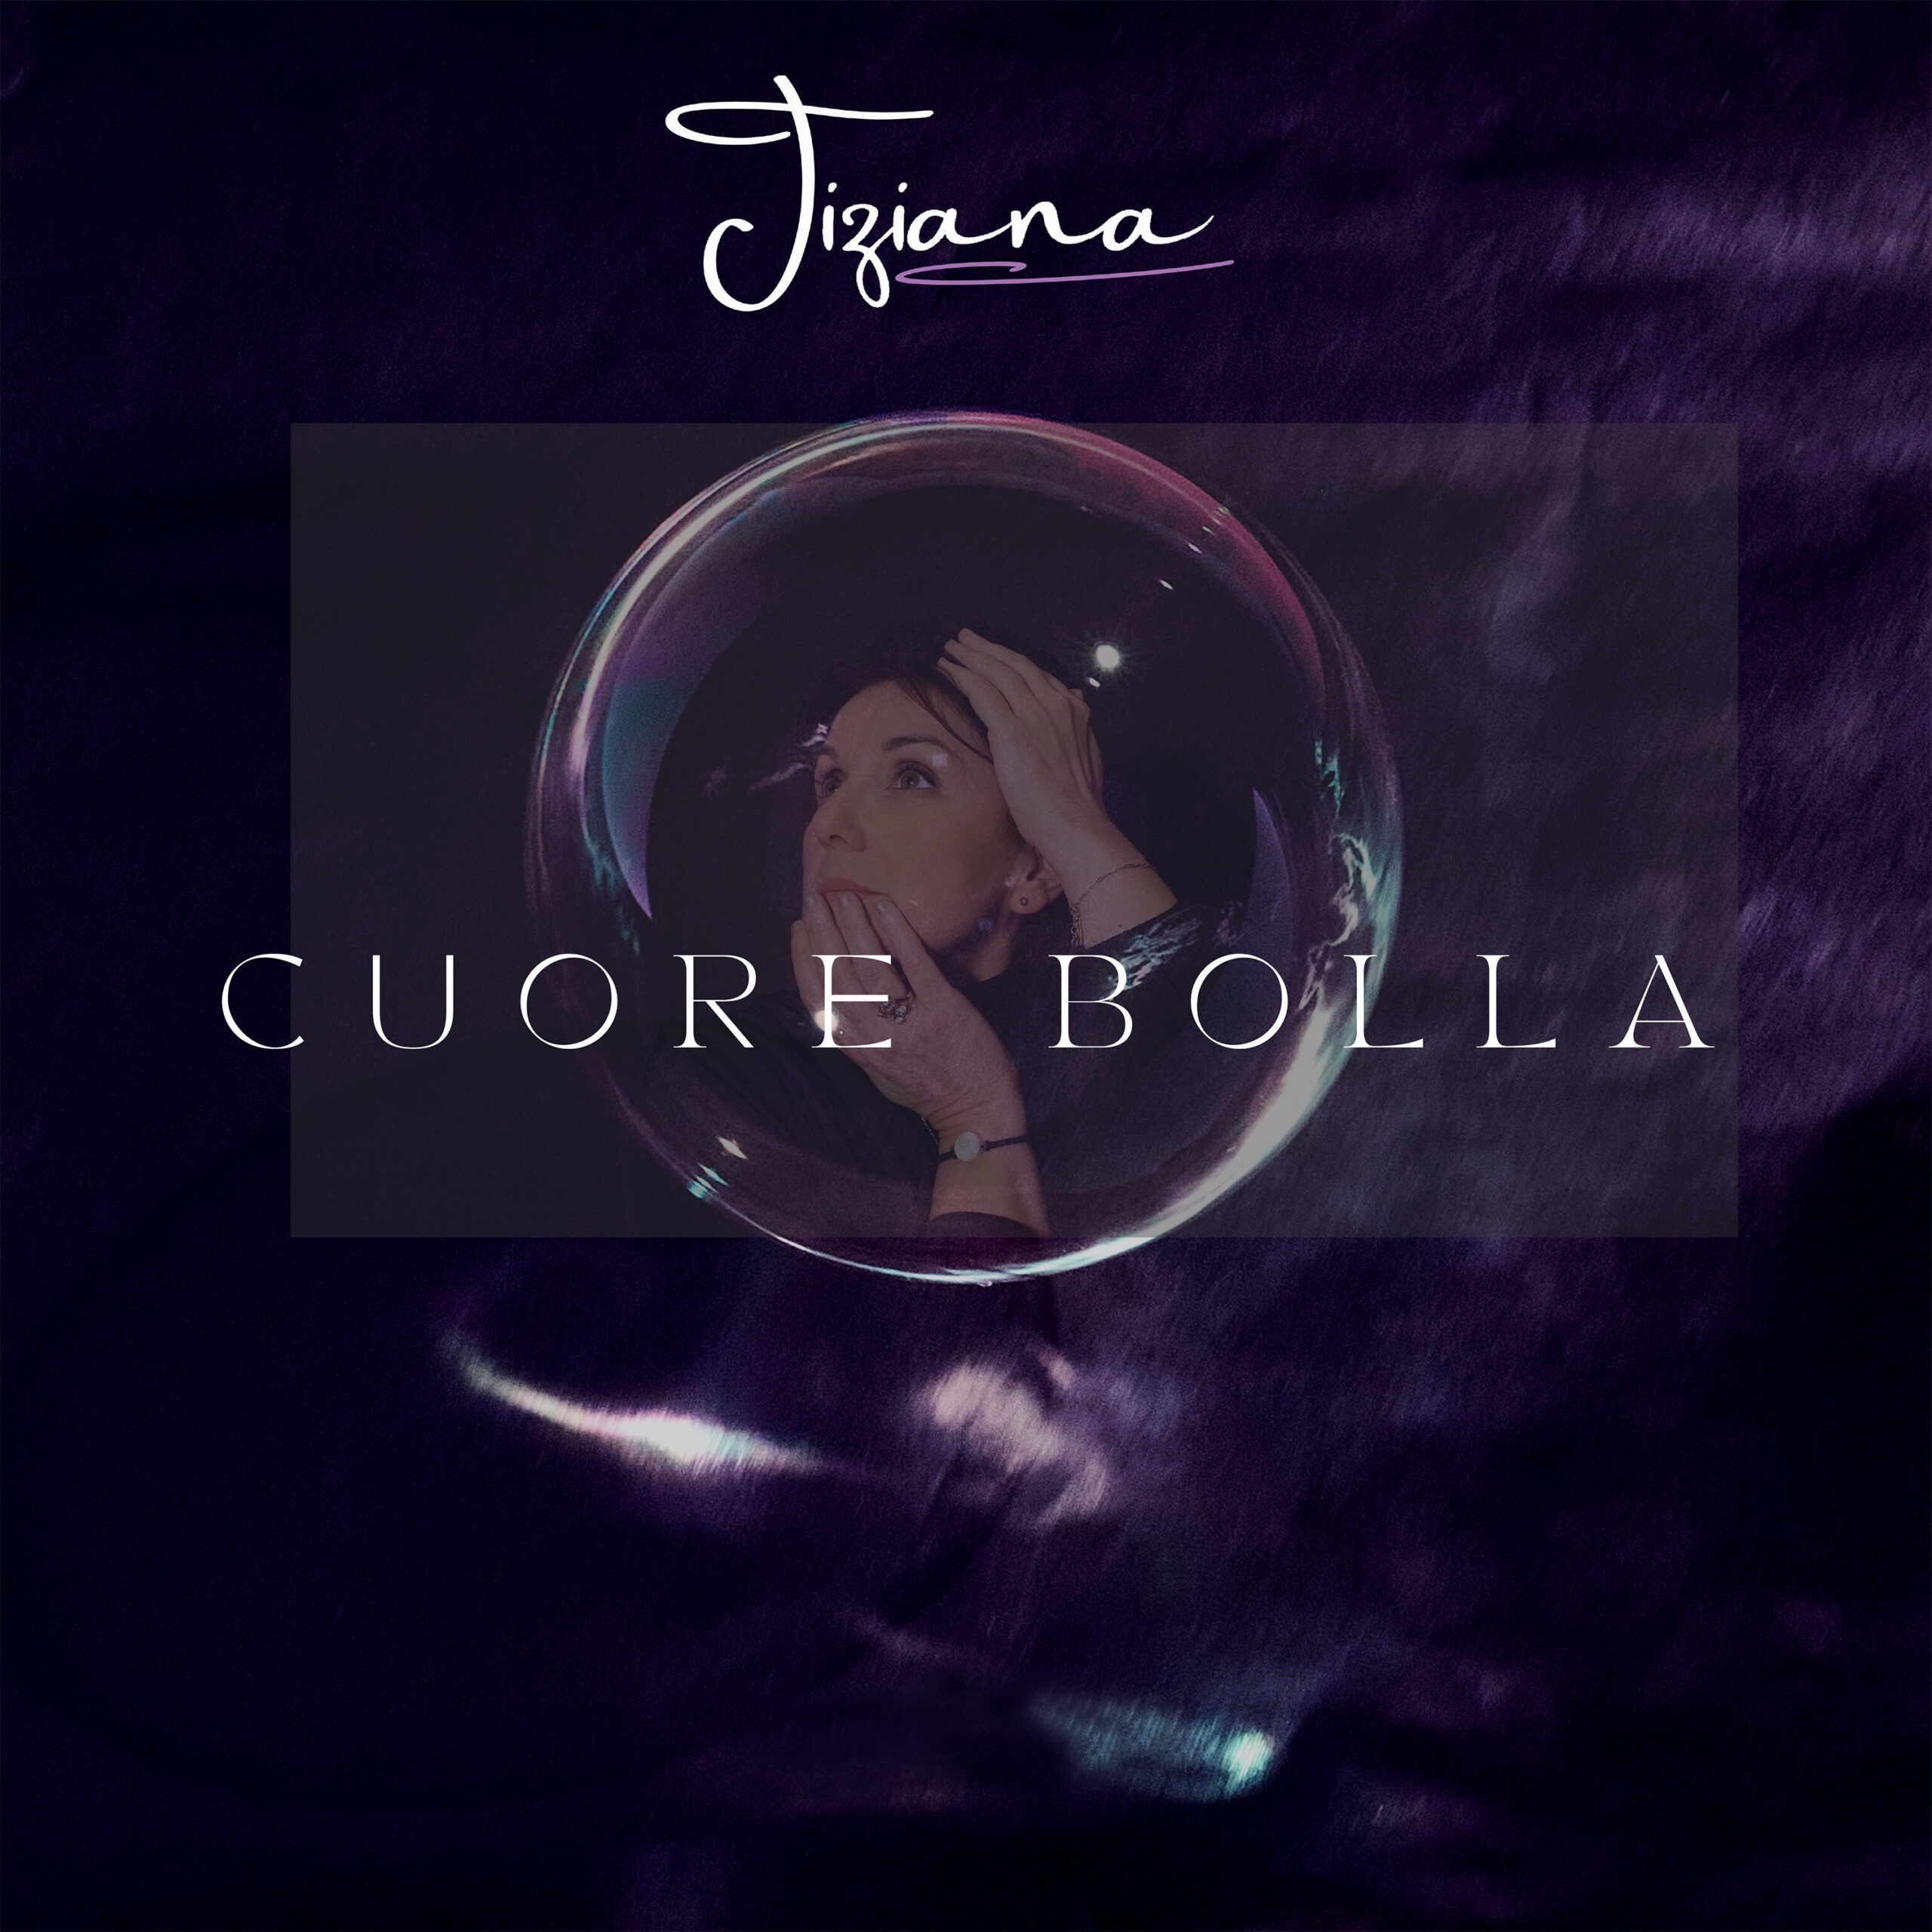 Anteprima Video “Cuore bolla”, il nuovo singolo dell’artista francese Tiziana